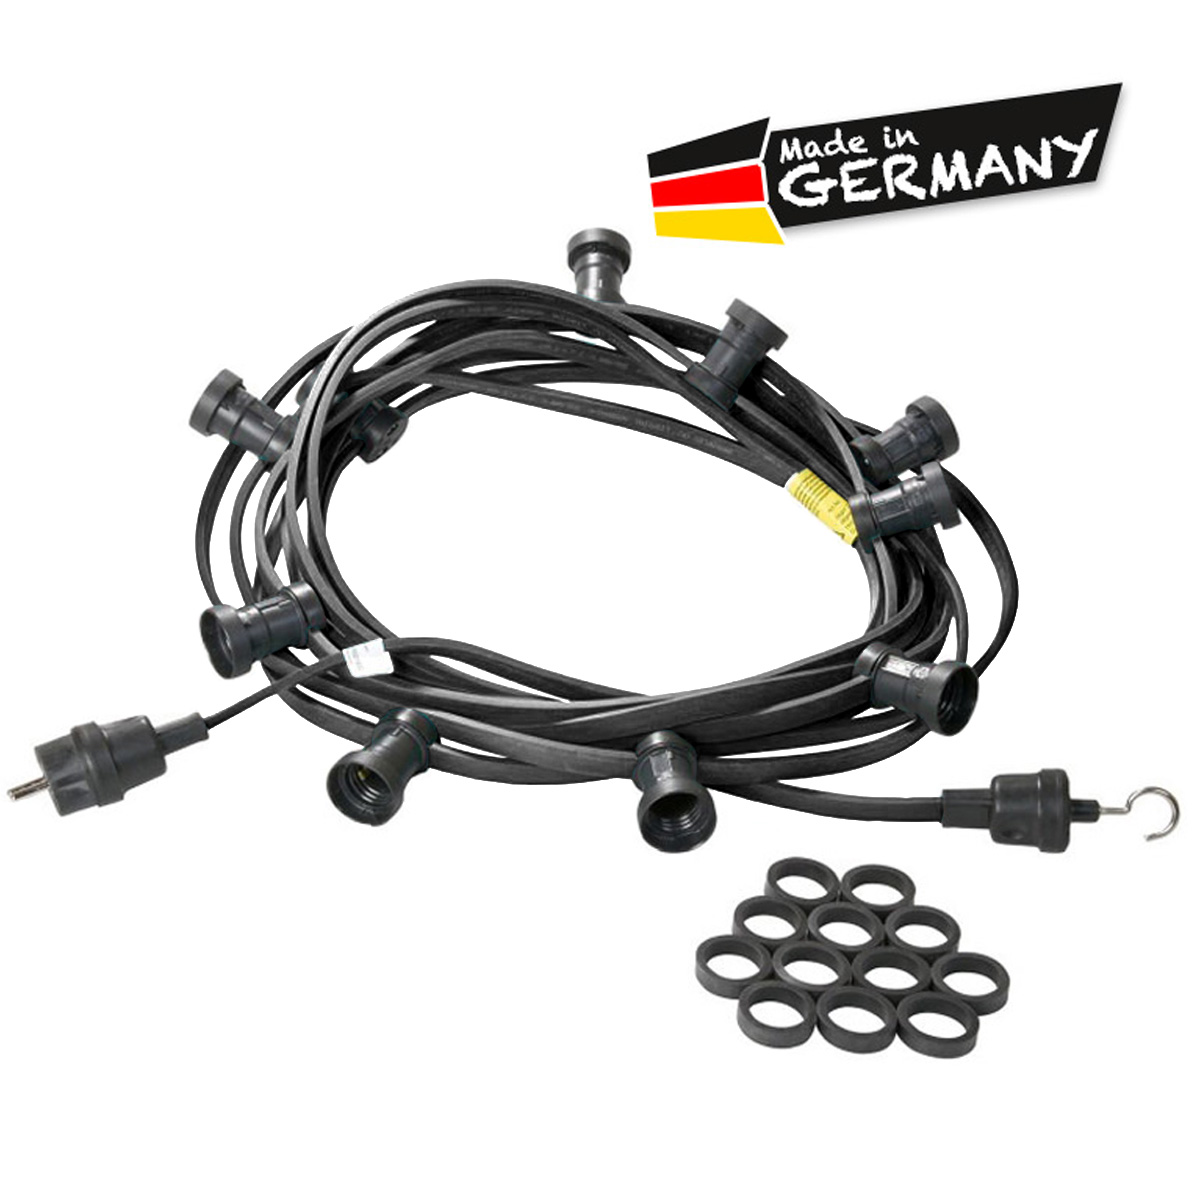 Illu-/Partylichterkette schwarz 5m | Außenlichterkette | Made in Germany | 10 x E27 Schraubfassung